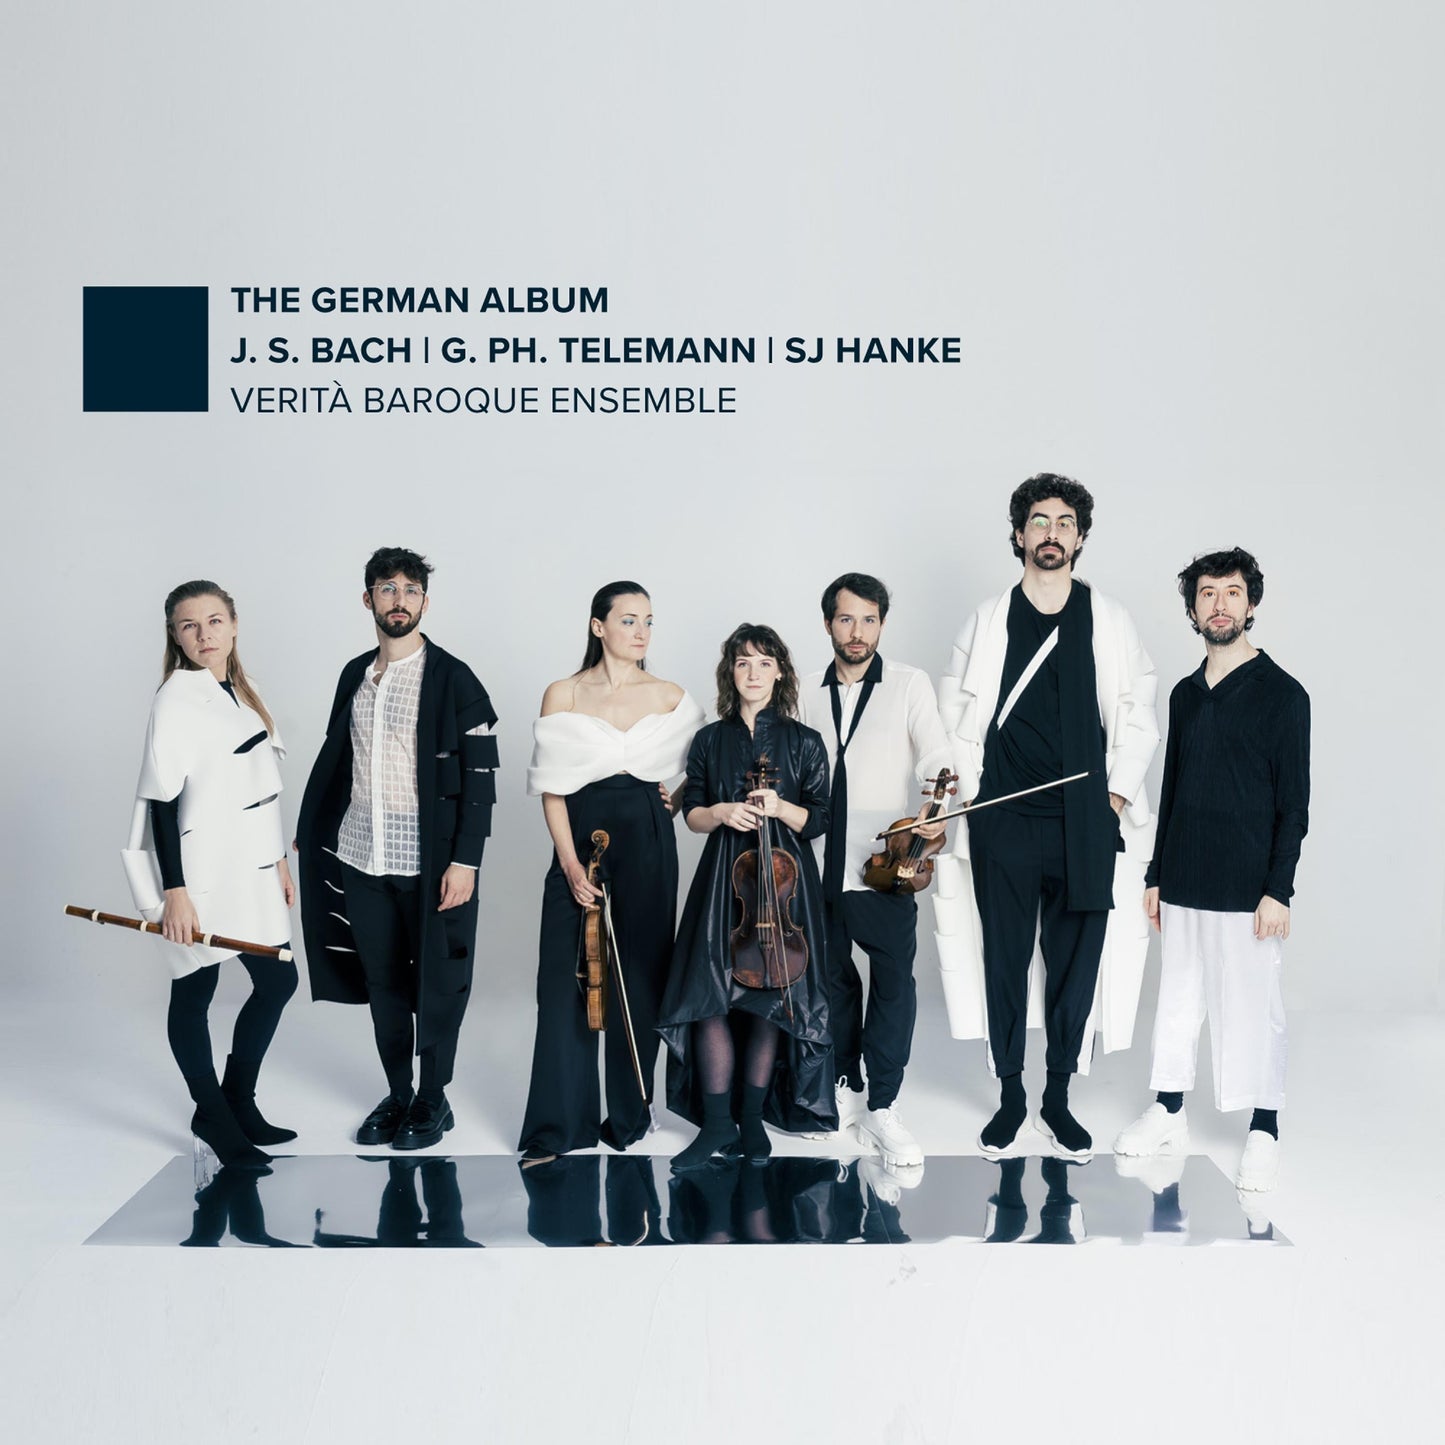 J.S. Bach, Hanke & Telemann: The German Album